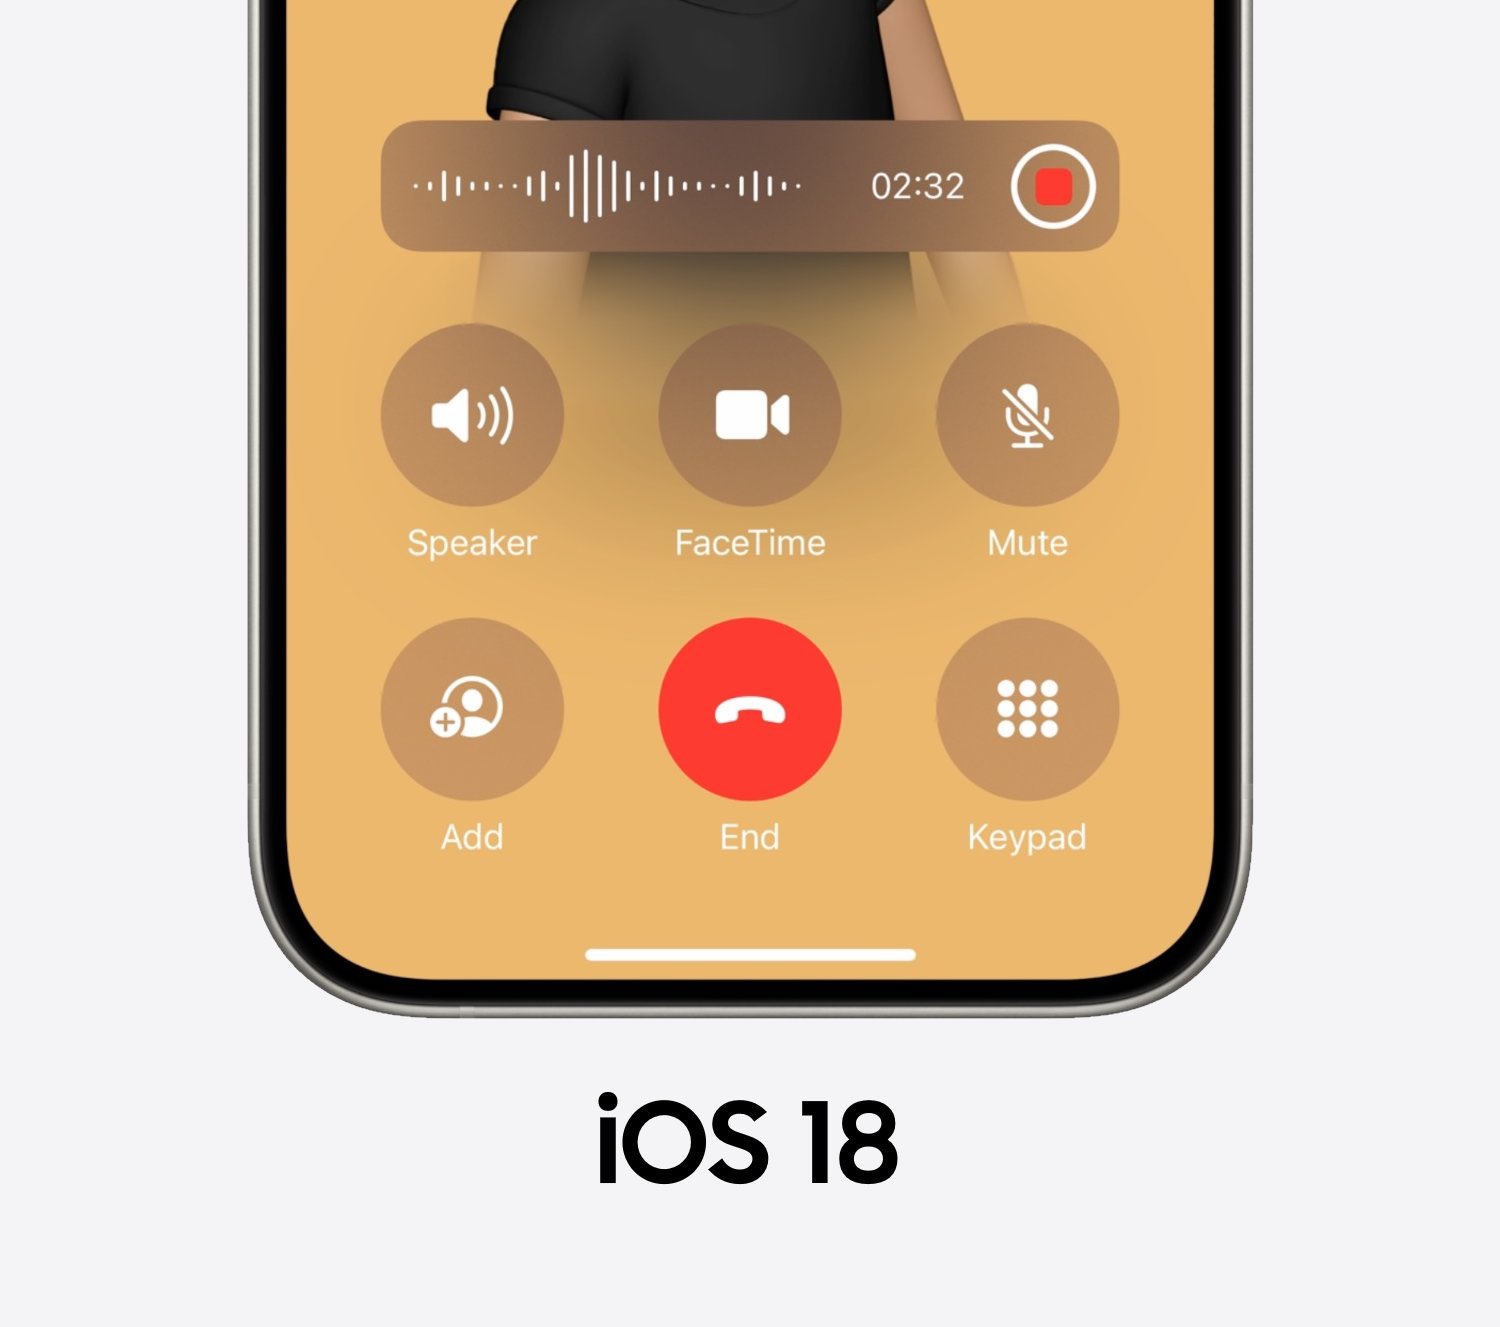 من iPhoneIslam.com، صورة مقربة لشاشة iPhone بنظام iOS 18، تظهر واجهة مكالمة نشطة مع تسجيل المكالمات قيد التقدم. تعرض الشاشة مؤقتًا مدته 02:32 وخيارات لمكبر الصوت وFaceTime وكتم الصوت والإضافة والإنهاء ولوحة المفاتيح - كل ذلك مدمج بسلاسة دون استخدام تطبيقات طرف ثالث.